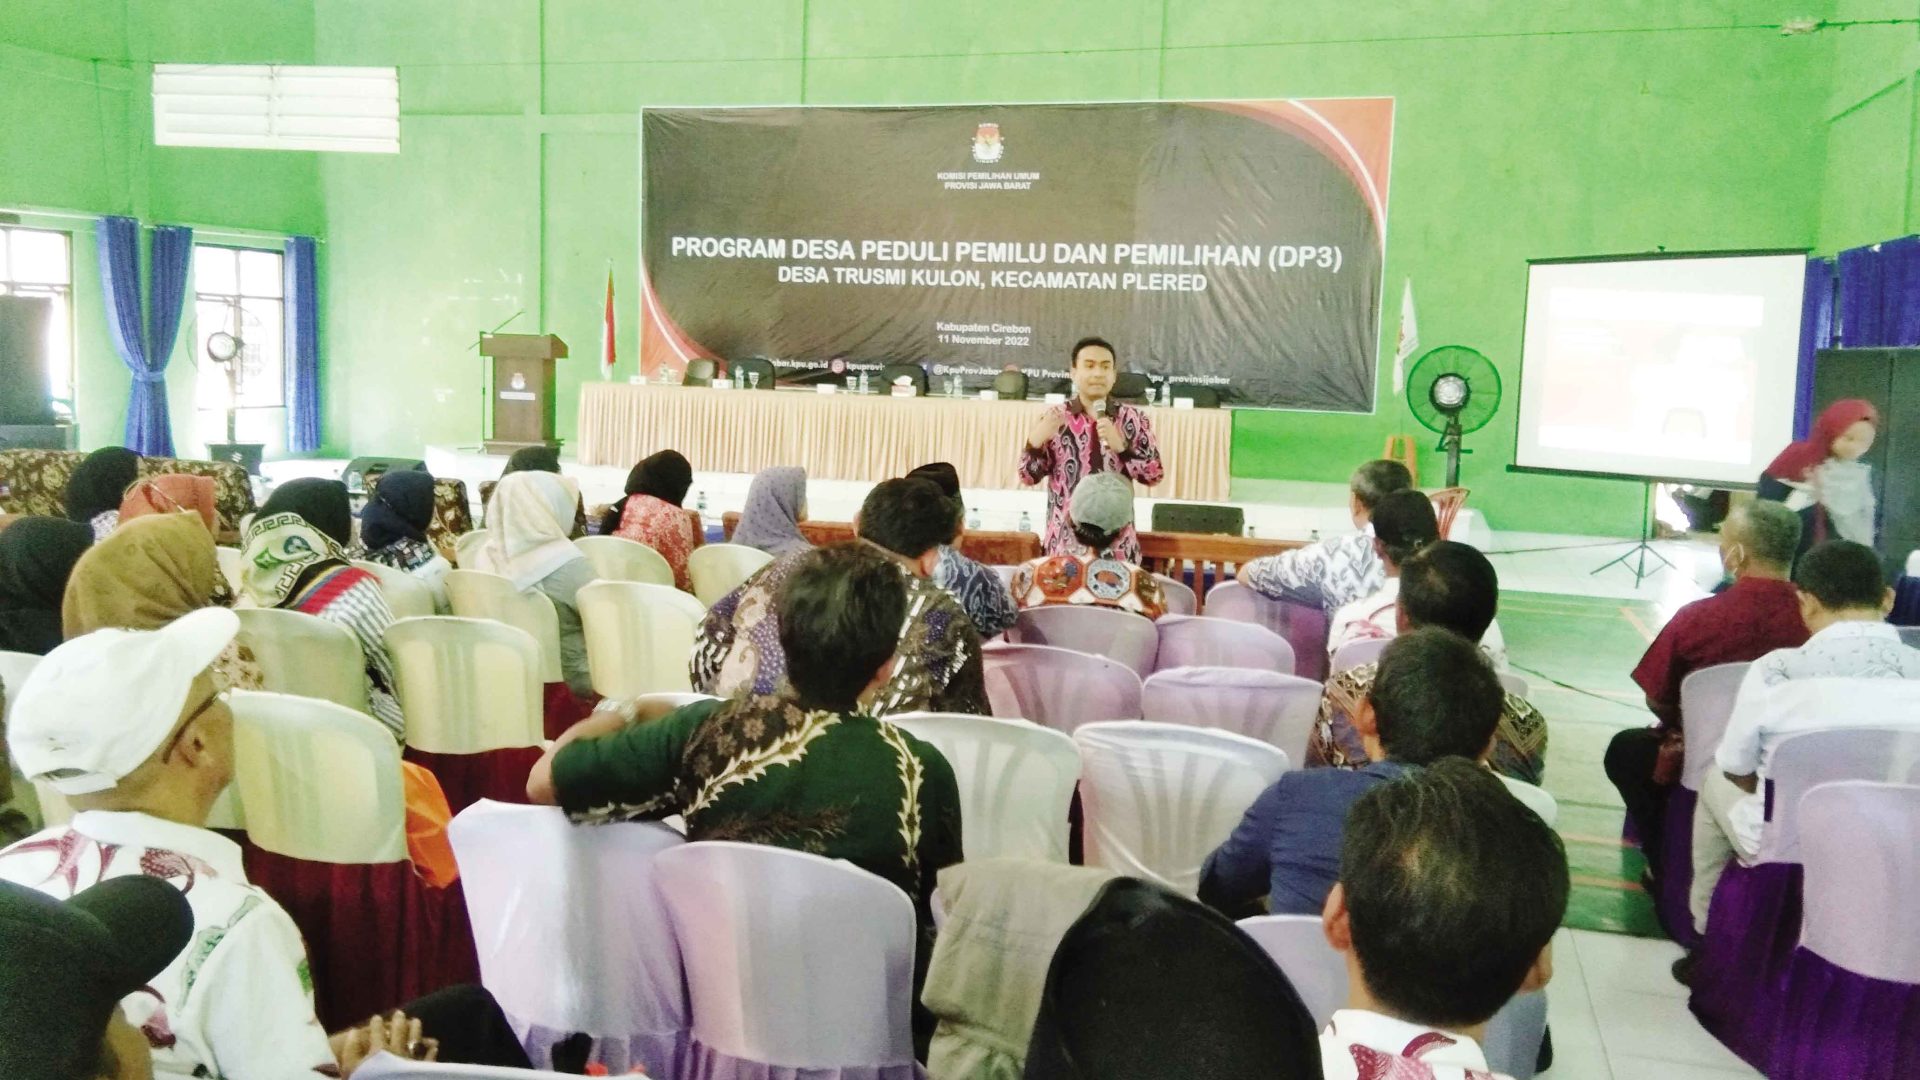 KPU Jabar dan Kabupaten Cirebon Tetapkan Desa Trusmi Kulon Jadi DP3